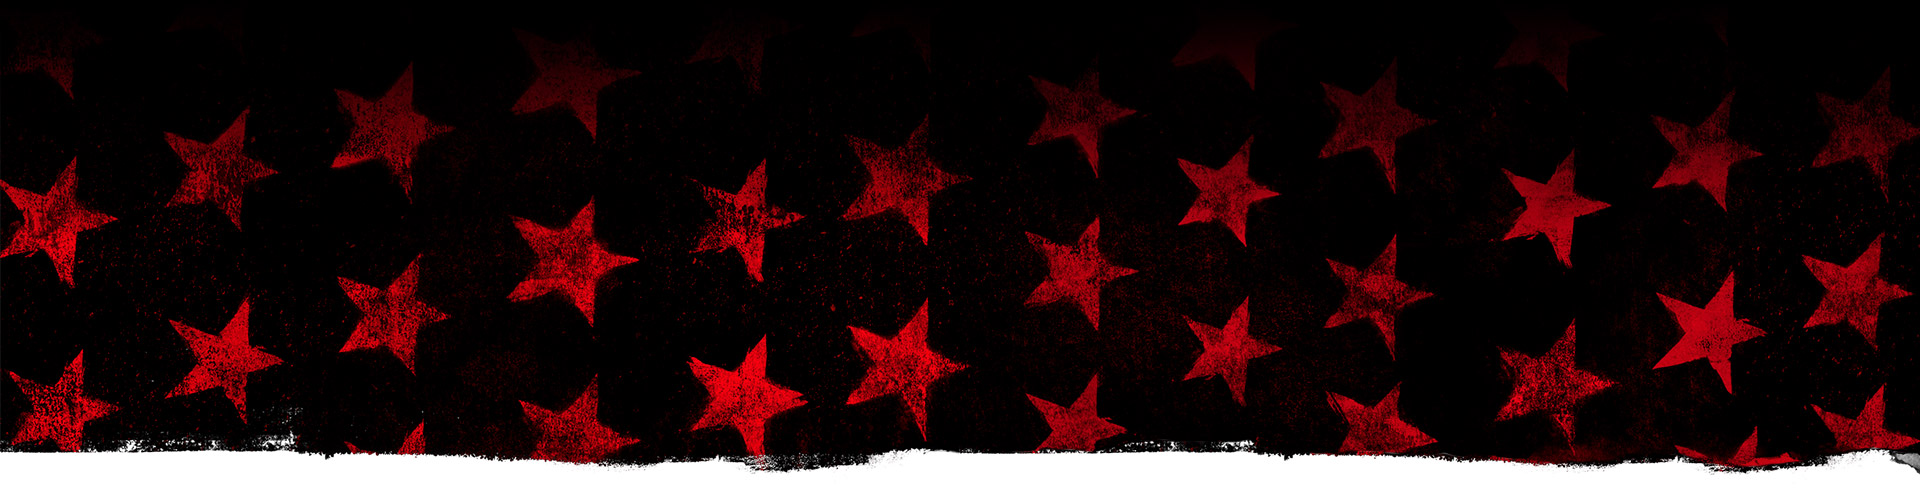 Rote Sterne vor einem schwarzen Hintergrund.